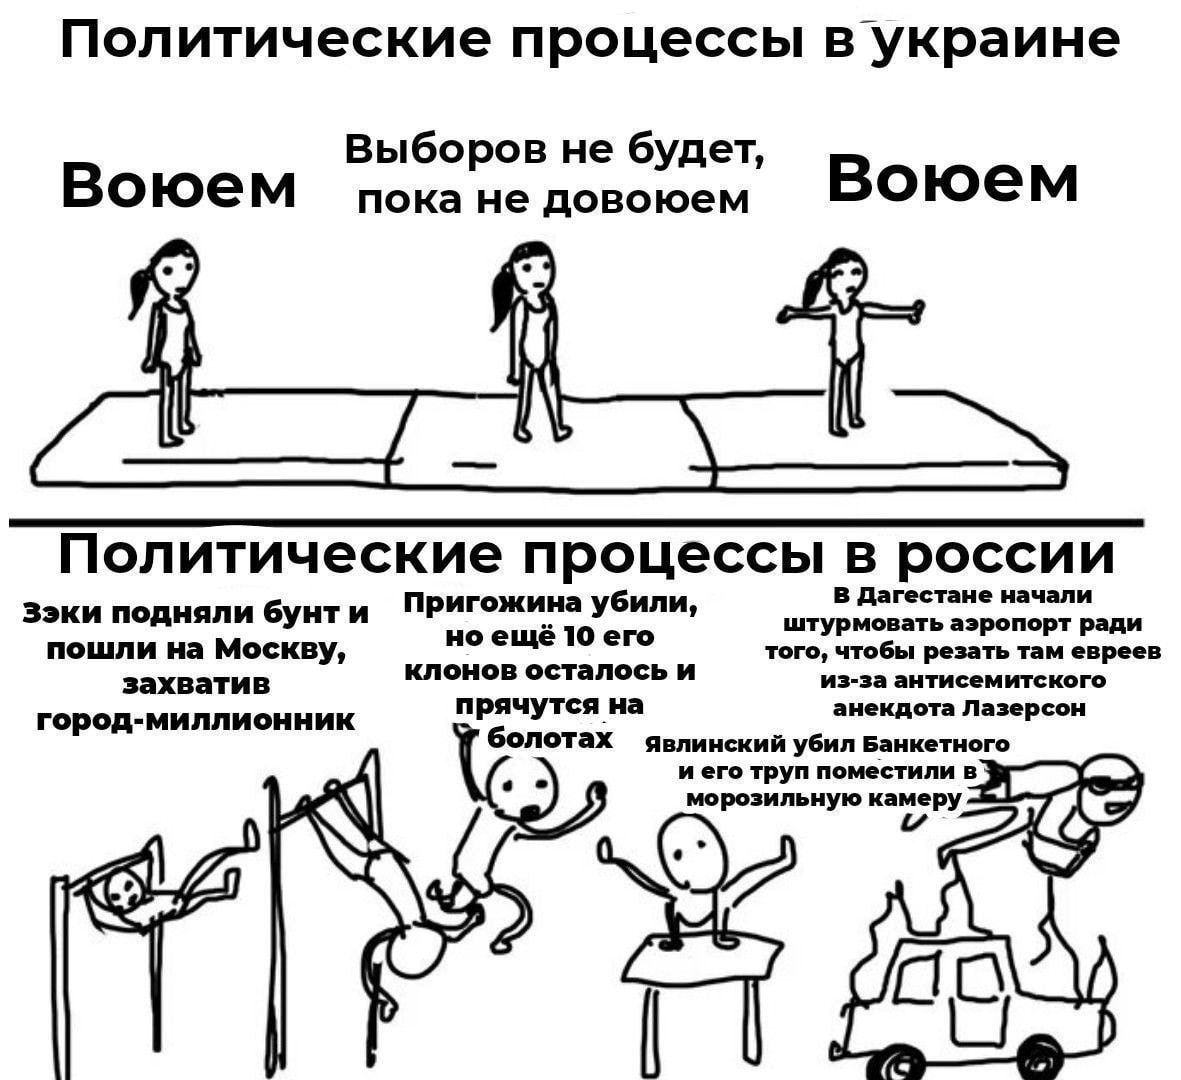 https://ttyh.ru/bridge/9207ae57/file_6030.jpg